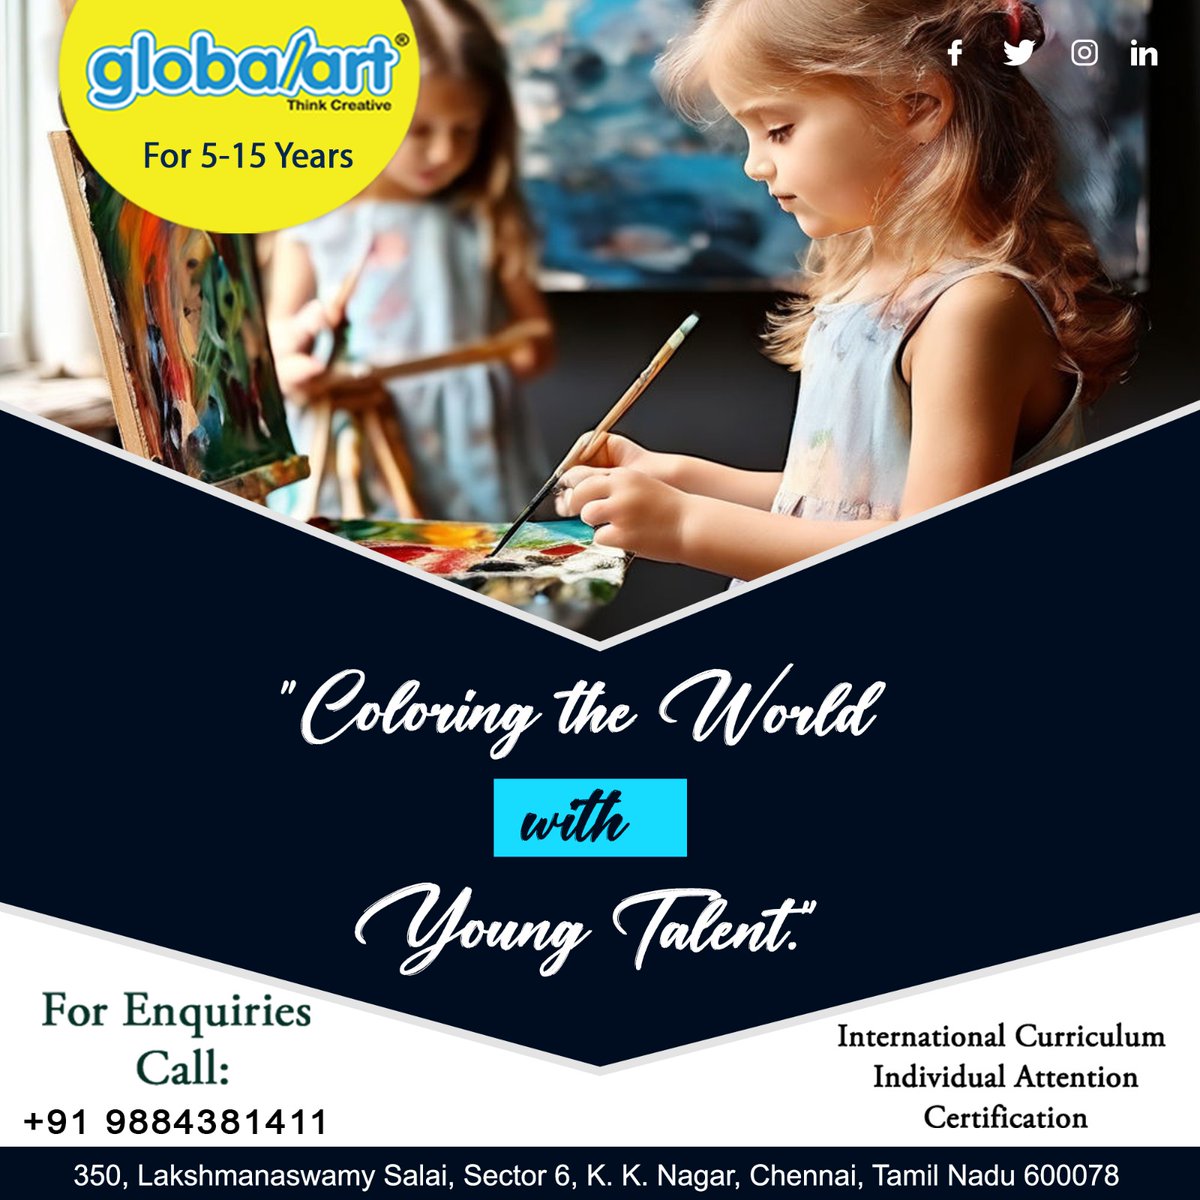 Globalart K K Nagar
'Brushing Life's Canvas With Art'
For more details call us: +91 9884381411
#ArtClasses #LearnArt #ArtInstruction #ArtEducation #ArtLessons #ArtWorkshops #CreativeClasses #ArtSchool #ArtTutorial #PaintingClass #DrawingClass #SculptureClass #CraftClasses